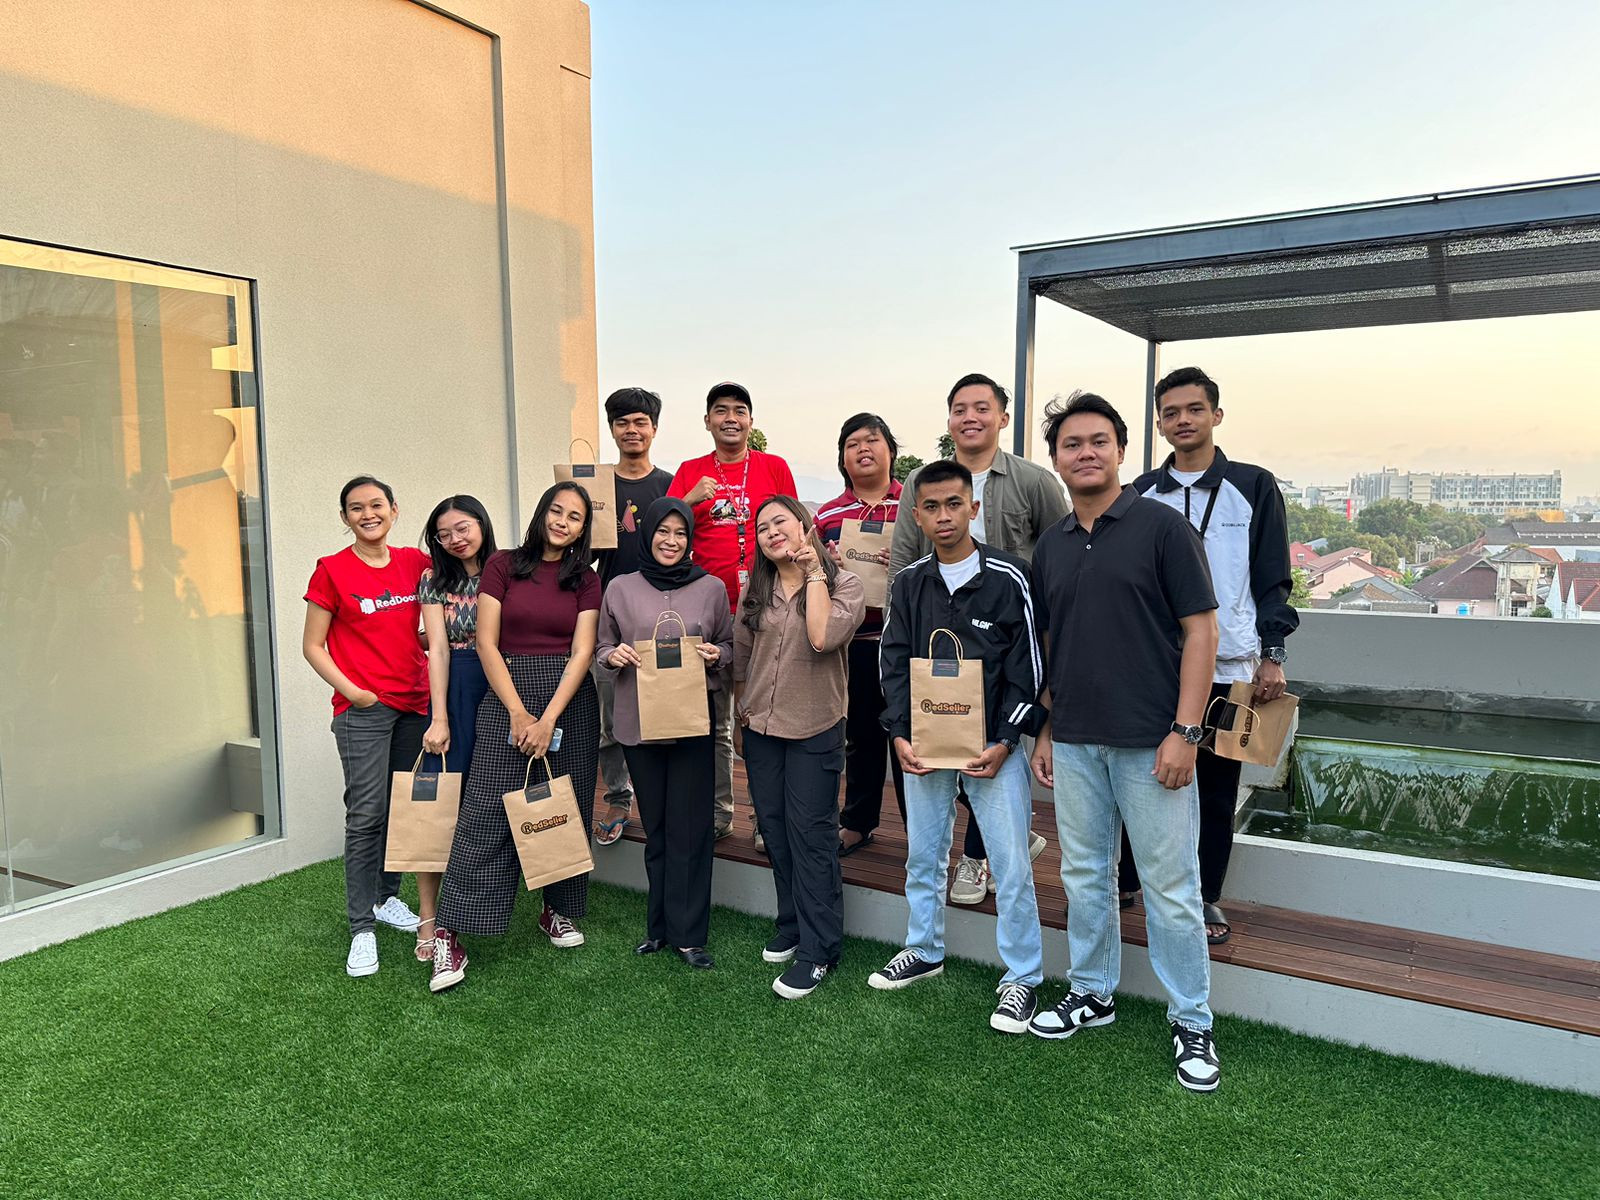 RedDoorz jalankan program reseller, pertama di Asia Tenggara